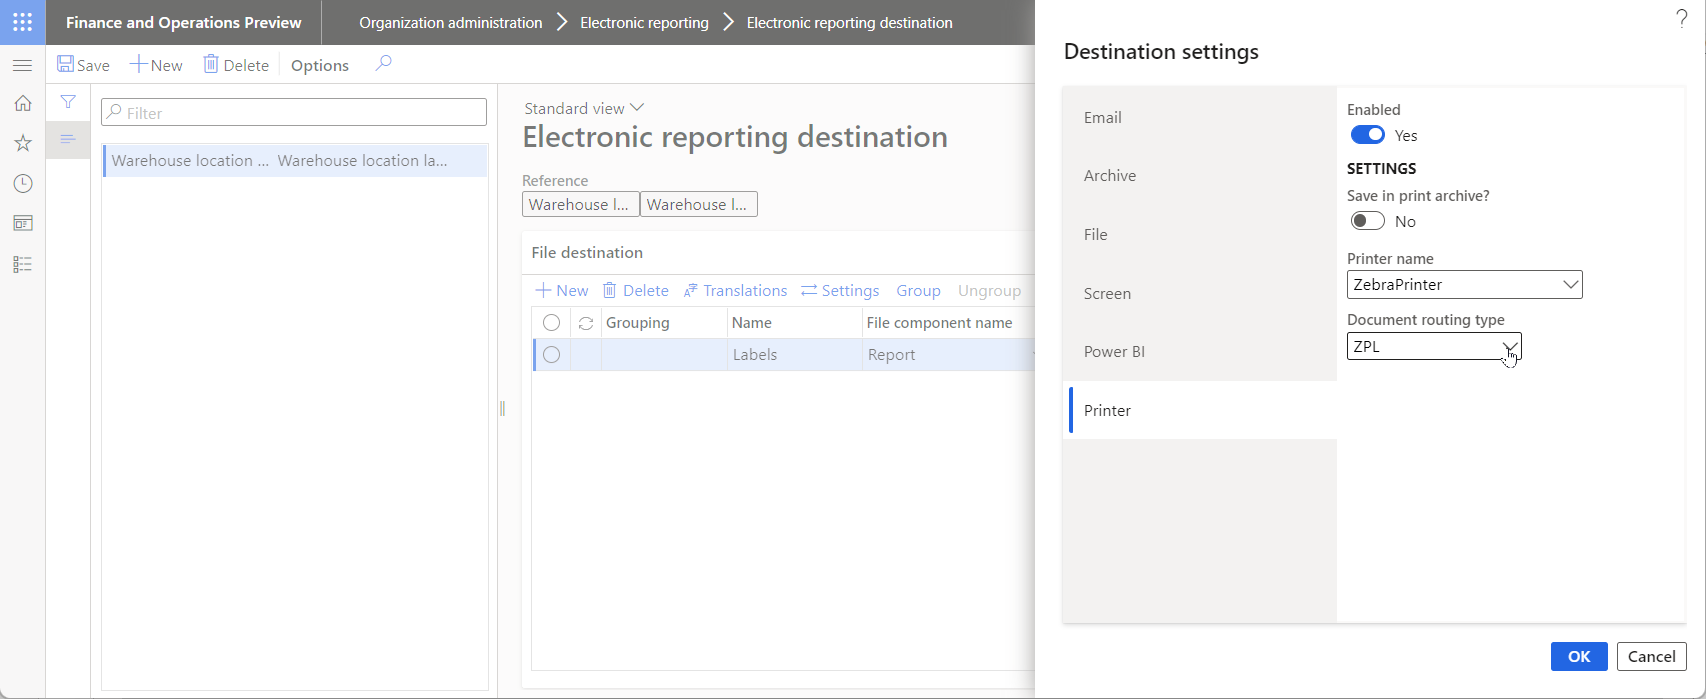 A configurar o destino de ER para o formato de Etiquetas de localização de armazém na página Destino de relatórios eletrónicos.